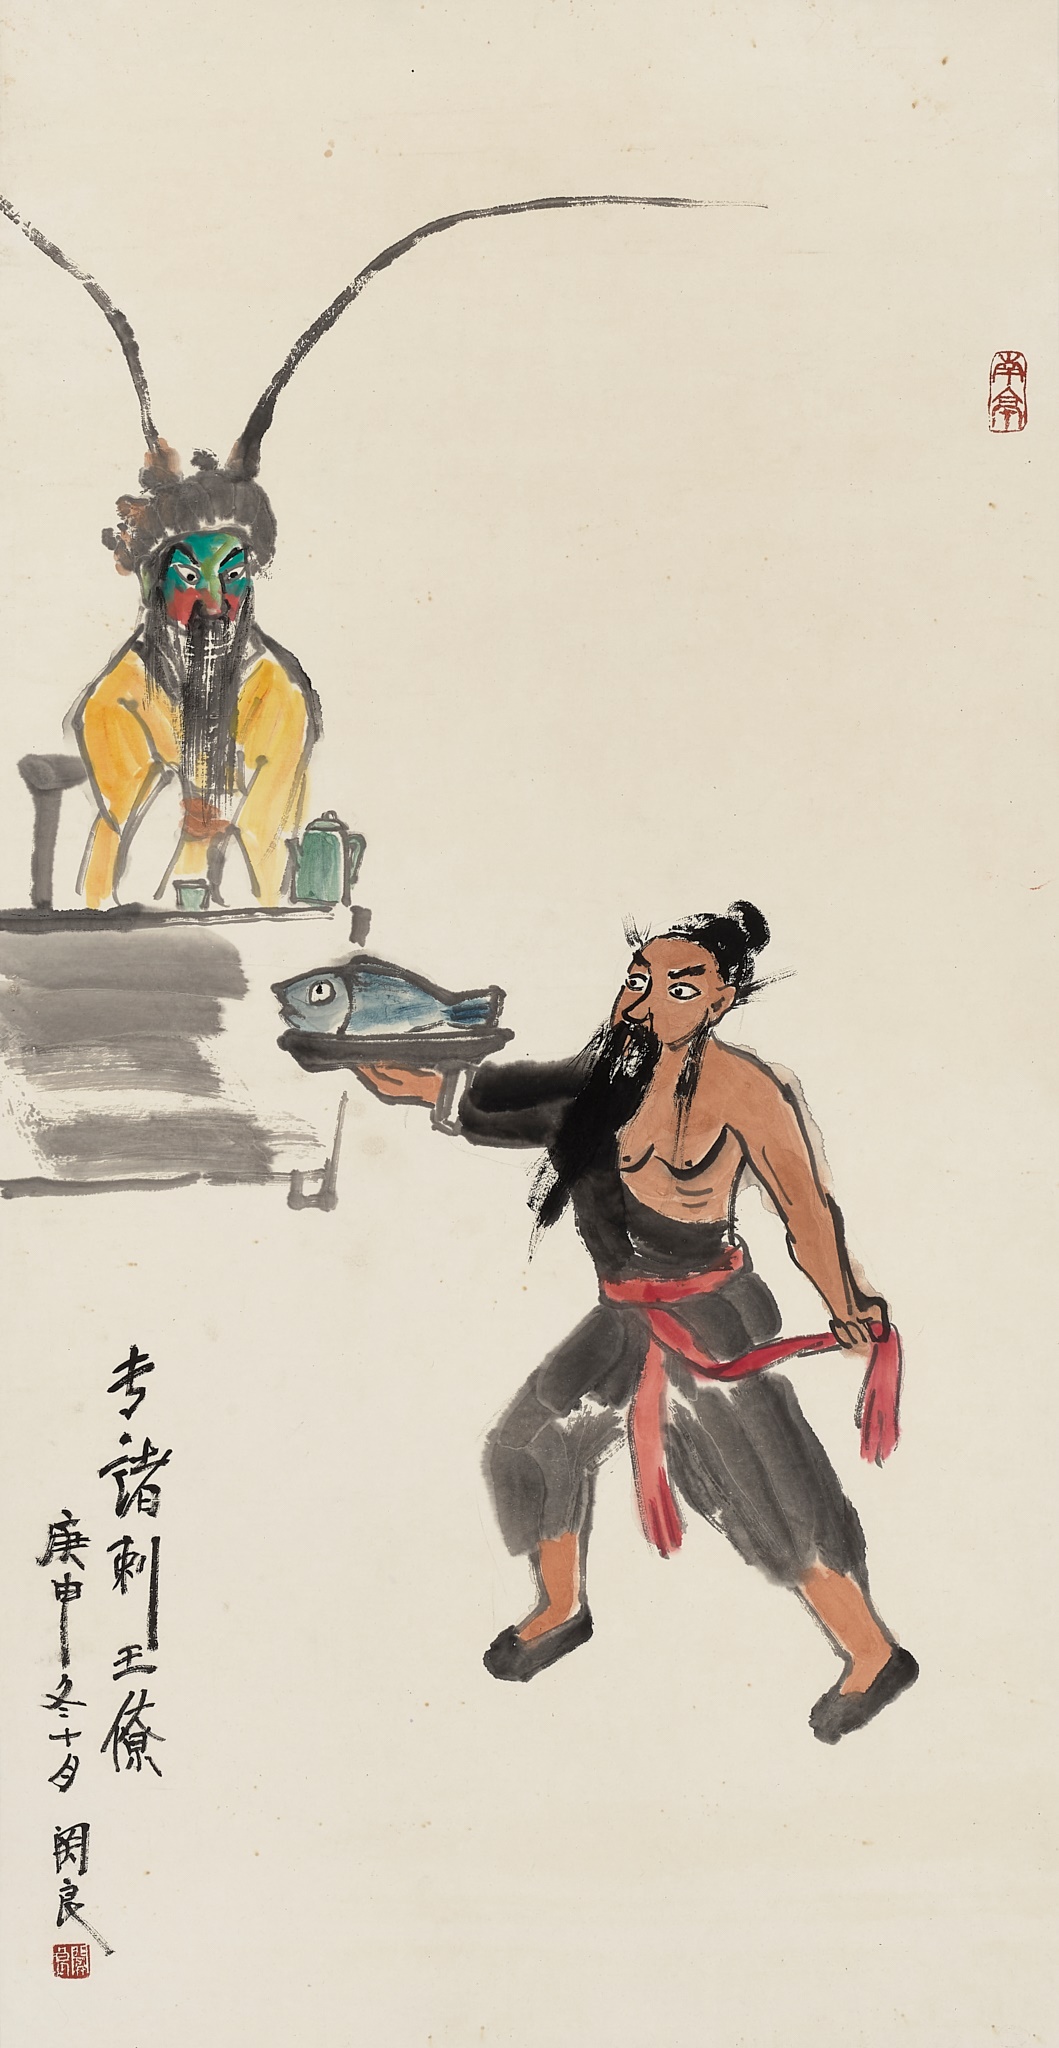 ZHUAN ZHU ASSASSINATES KING LIAO', BY GUAN LIANG (1900-1986), DATED 1980